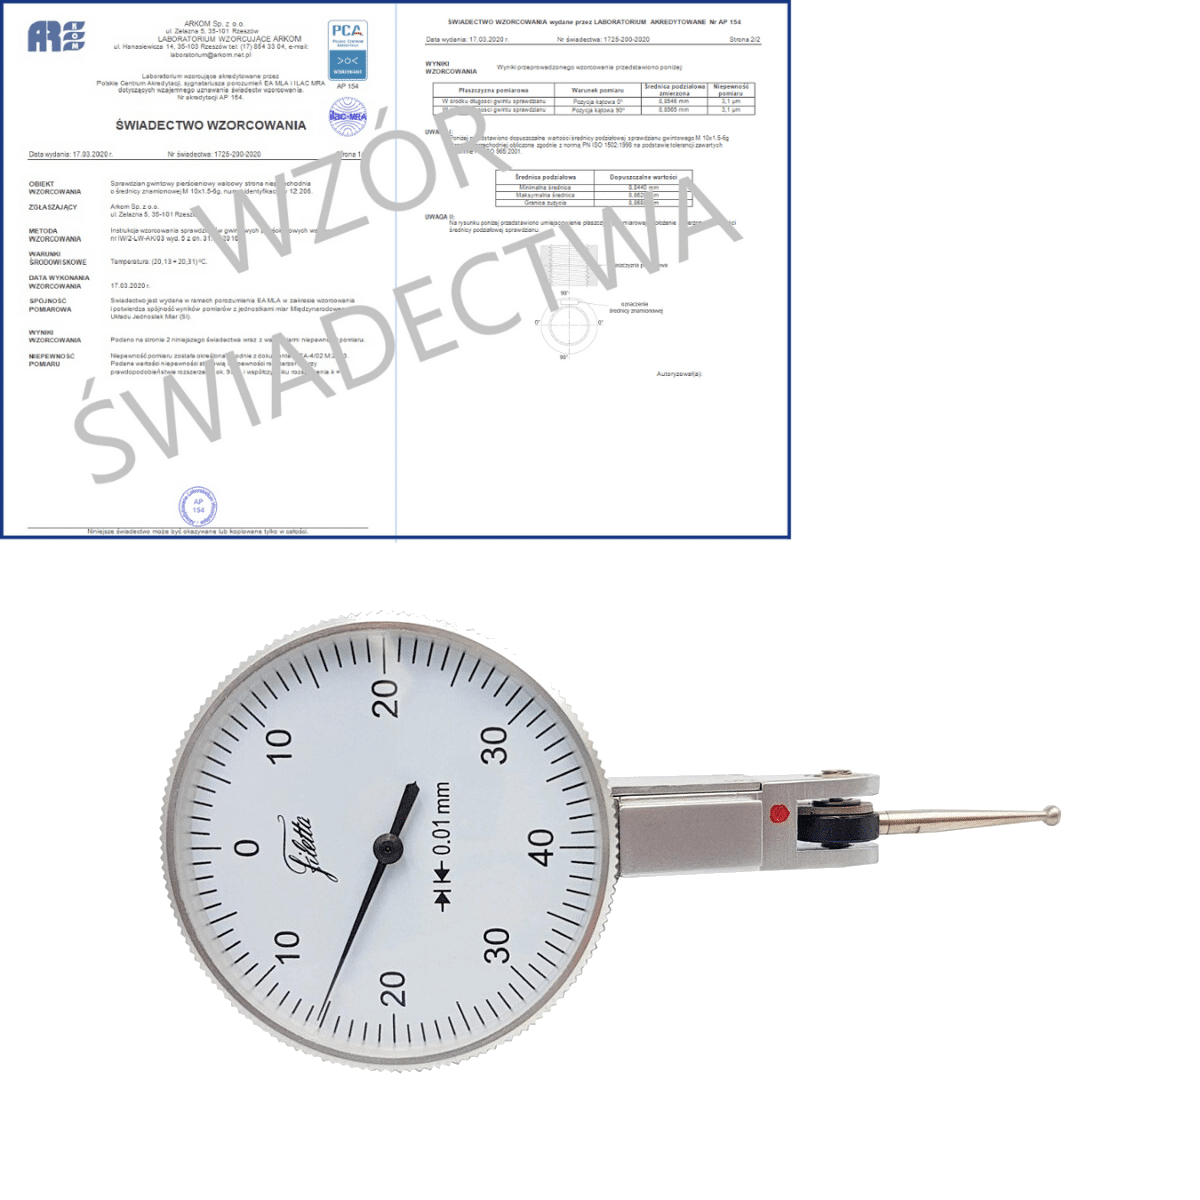 SCHUT czujnik dźwigniowo-zębaty 0-40-0/0.8/0.01mm diatest + świadectwo wzorcowania PCA 907.941 WZORC